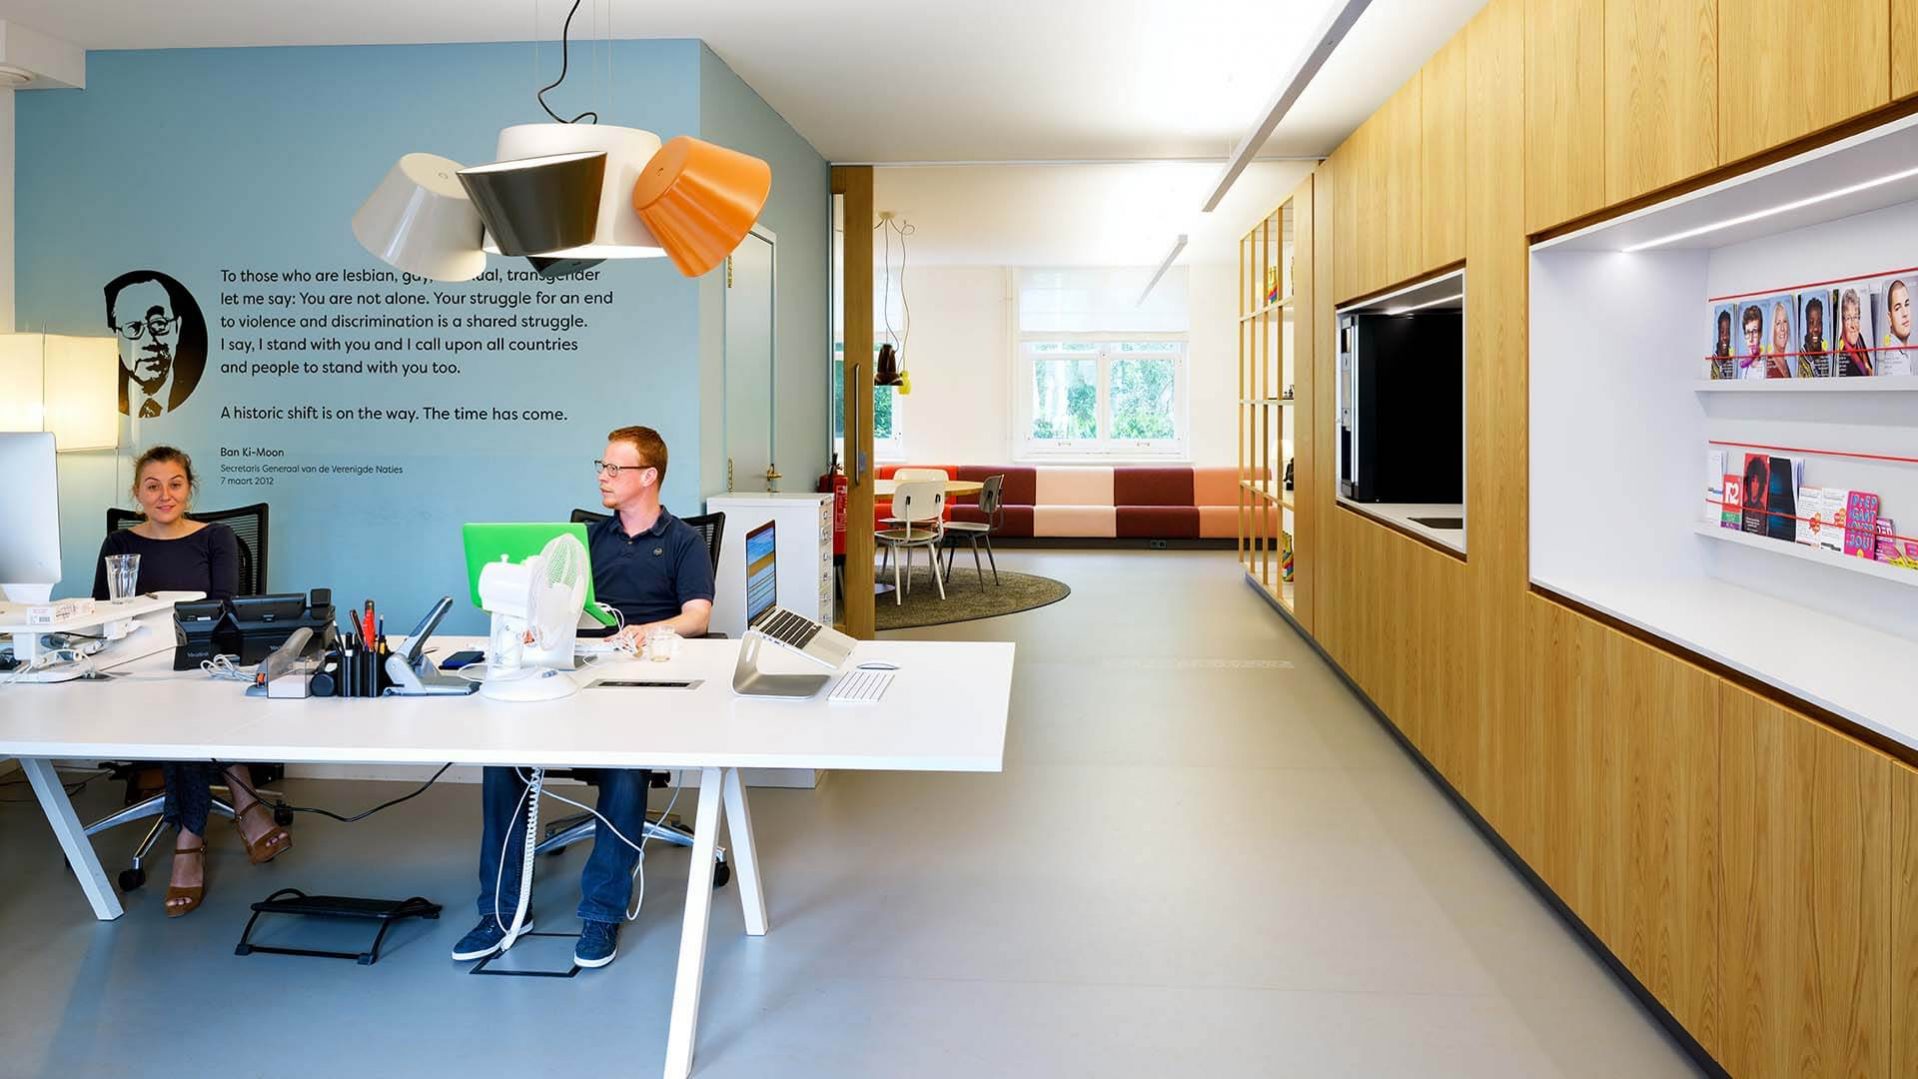 COC NedCOC Nederland, interieurontwerp Amsterdam, interieurontwerper kantoor, het nieuwe werken, wandkast hout | Burobaserland, interieurontwerp Amsterdam, tekst op de vloer | Burobas